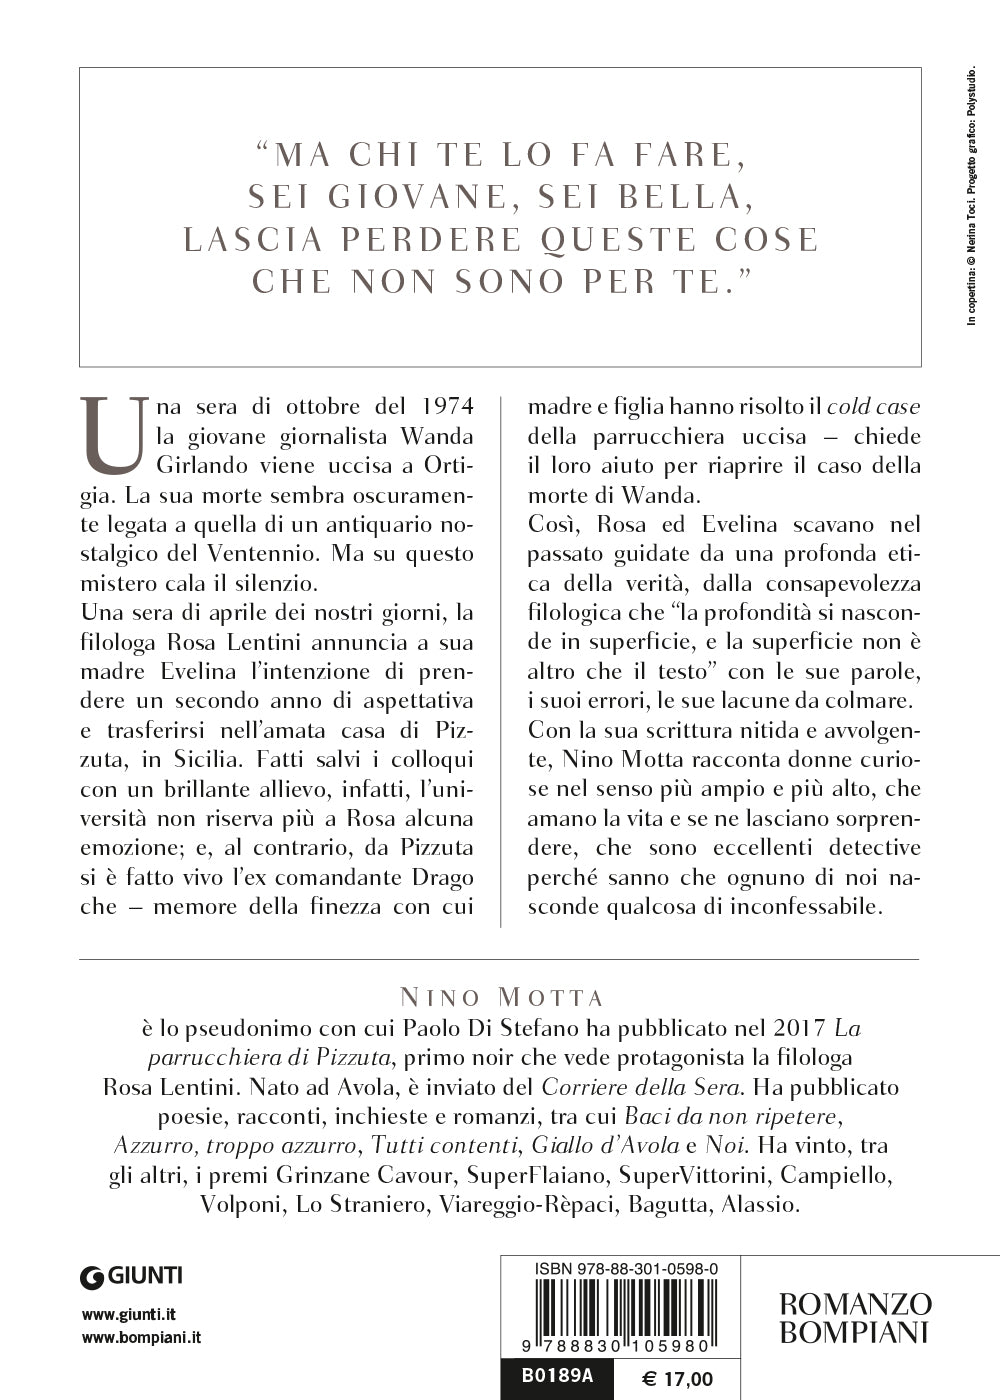 Ragazze troppo curiose::Un nuovo mistero siciliano per la filologa Rosa Lentini